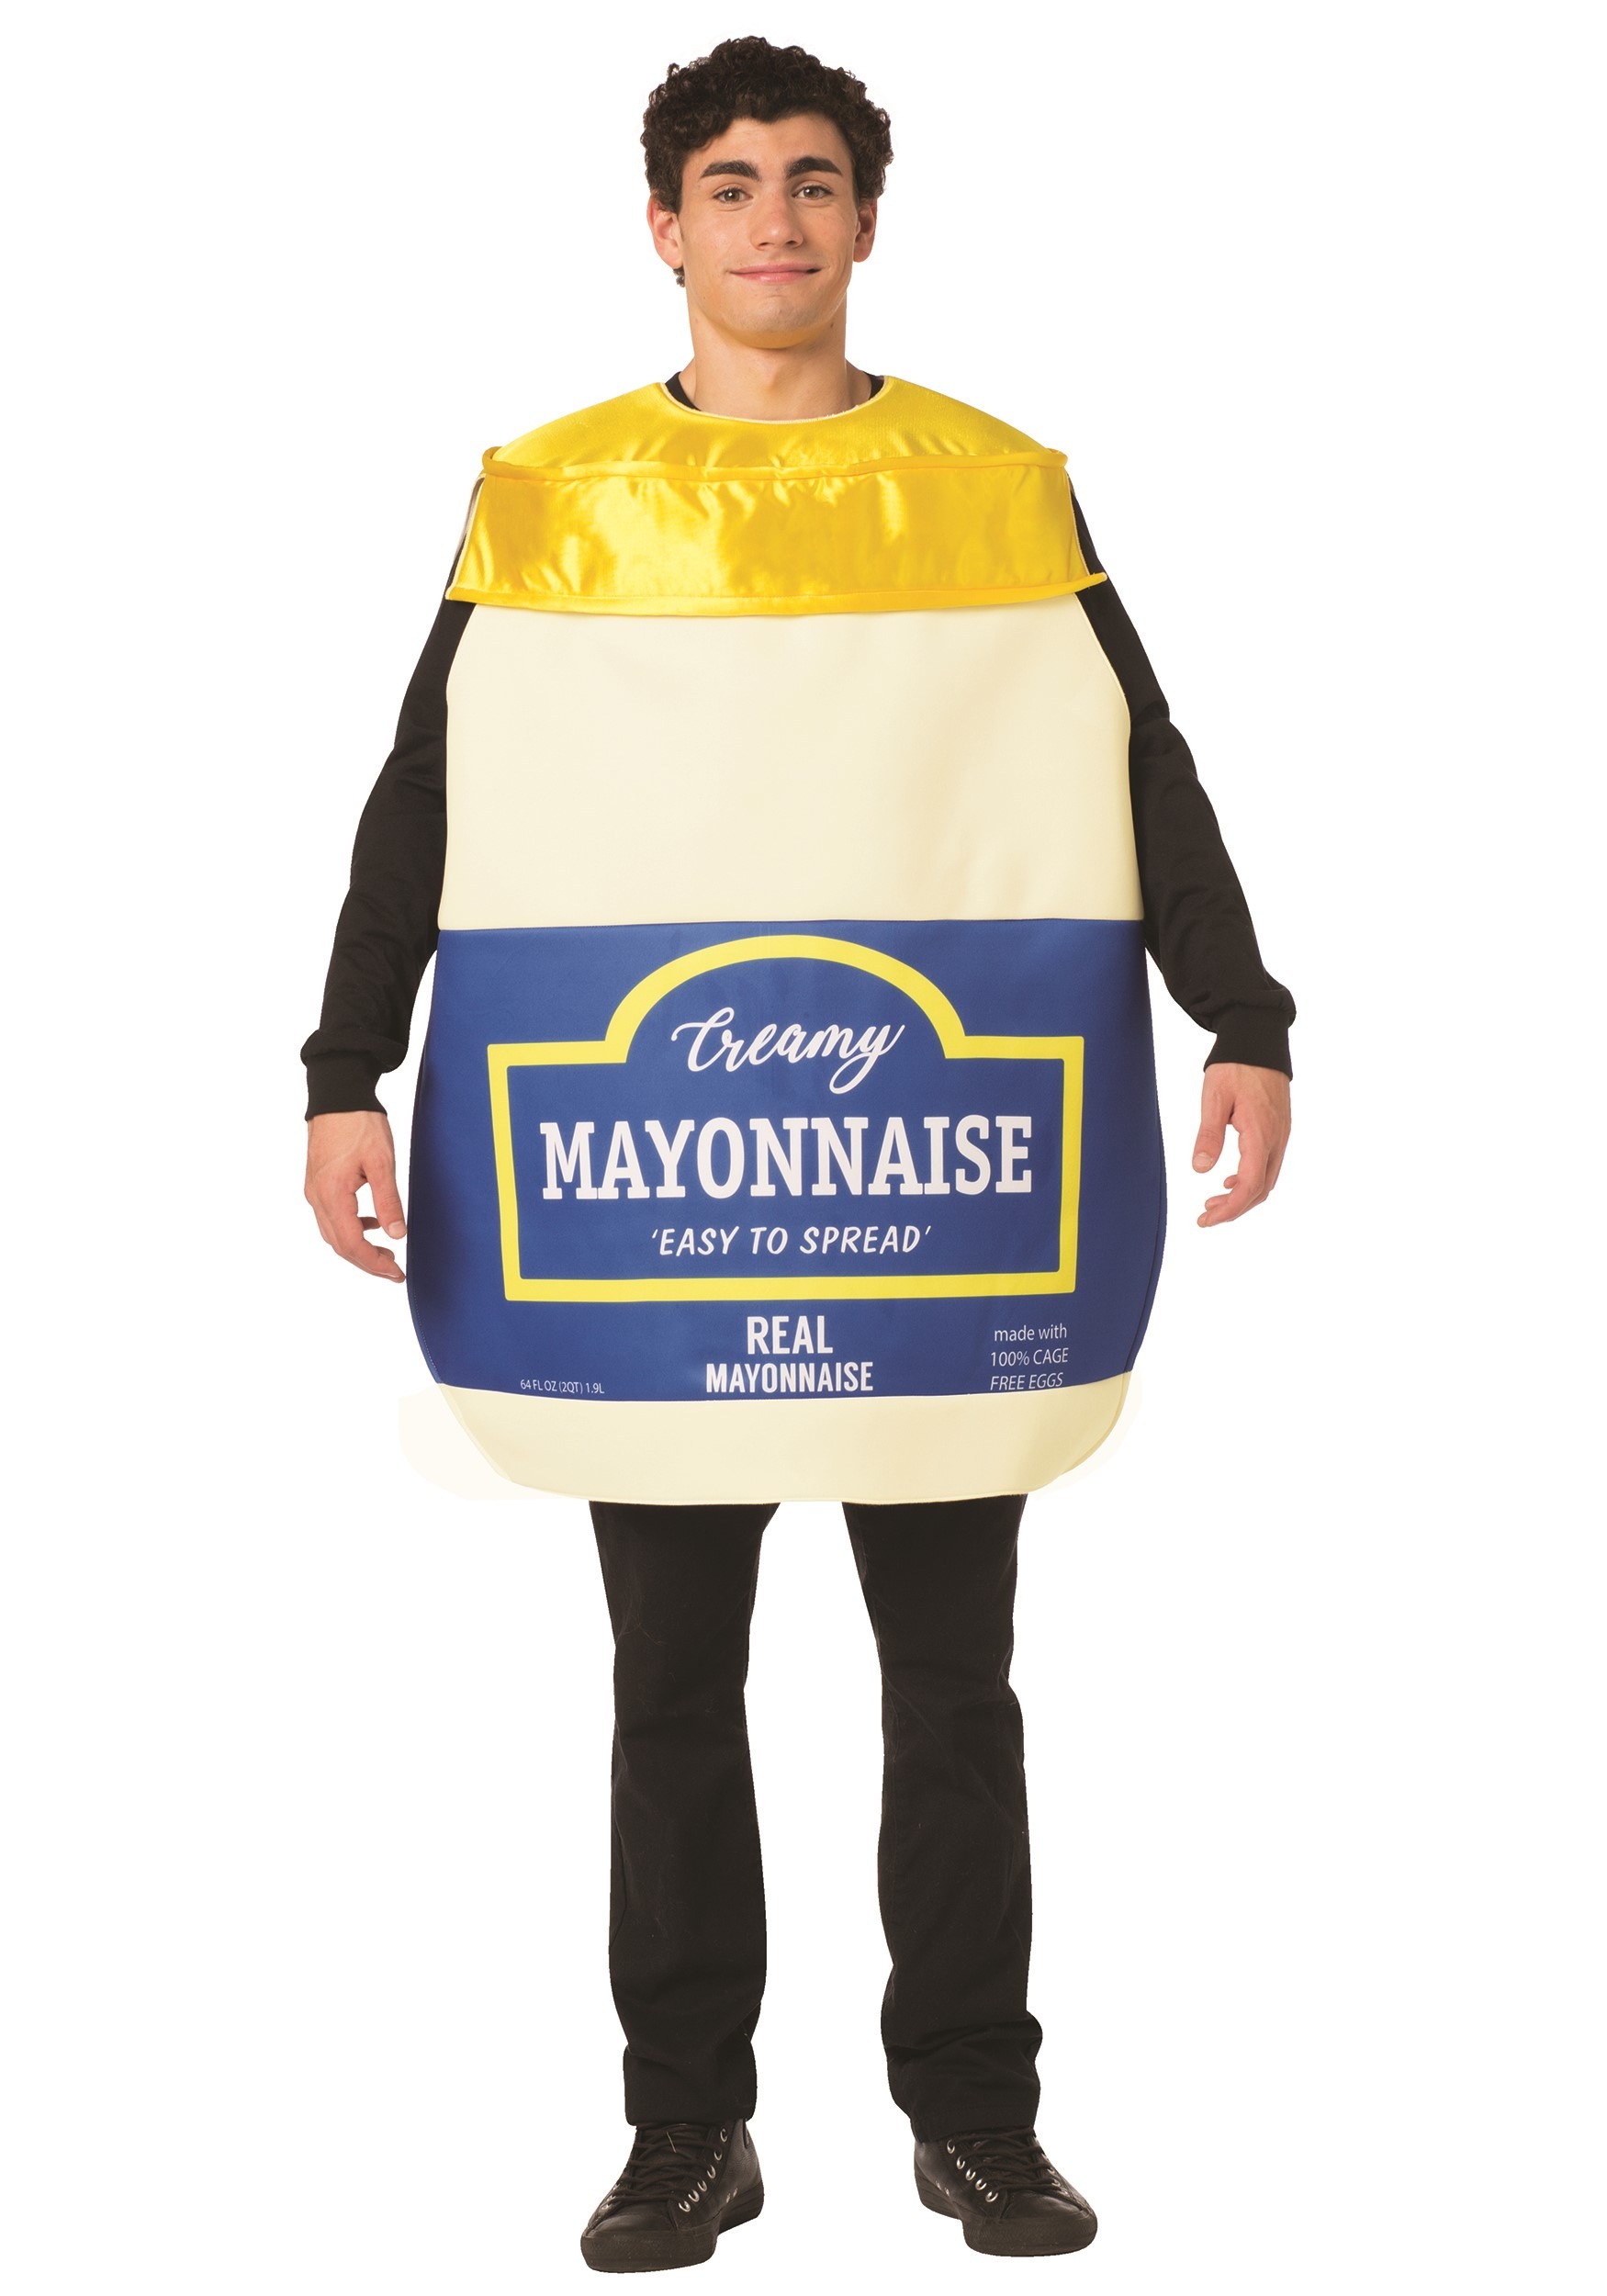 The Adult Mayonnaise Jar Costume